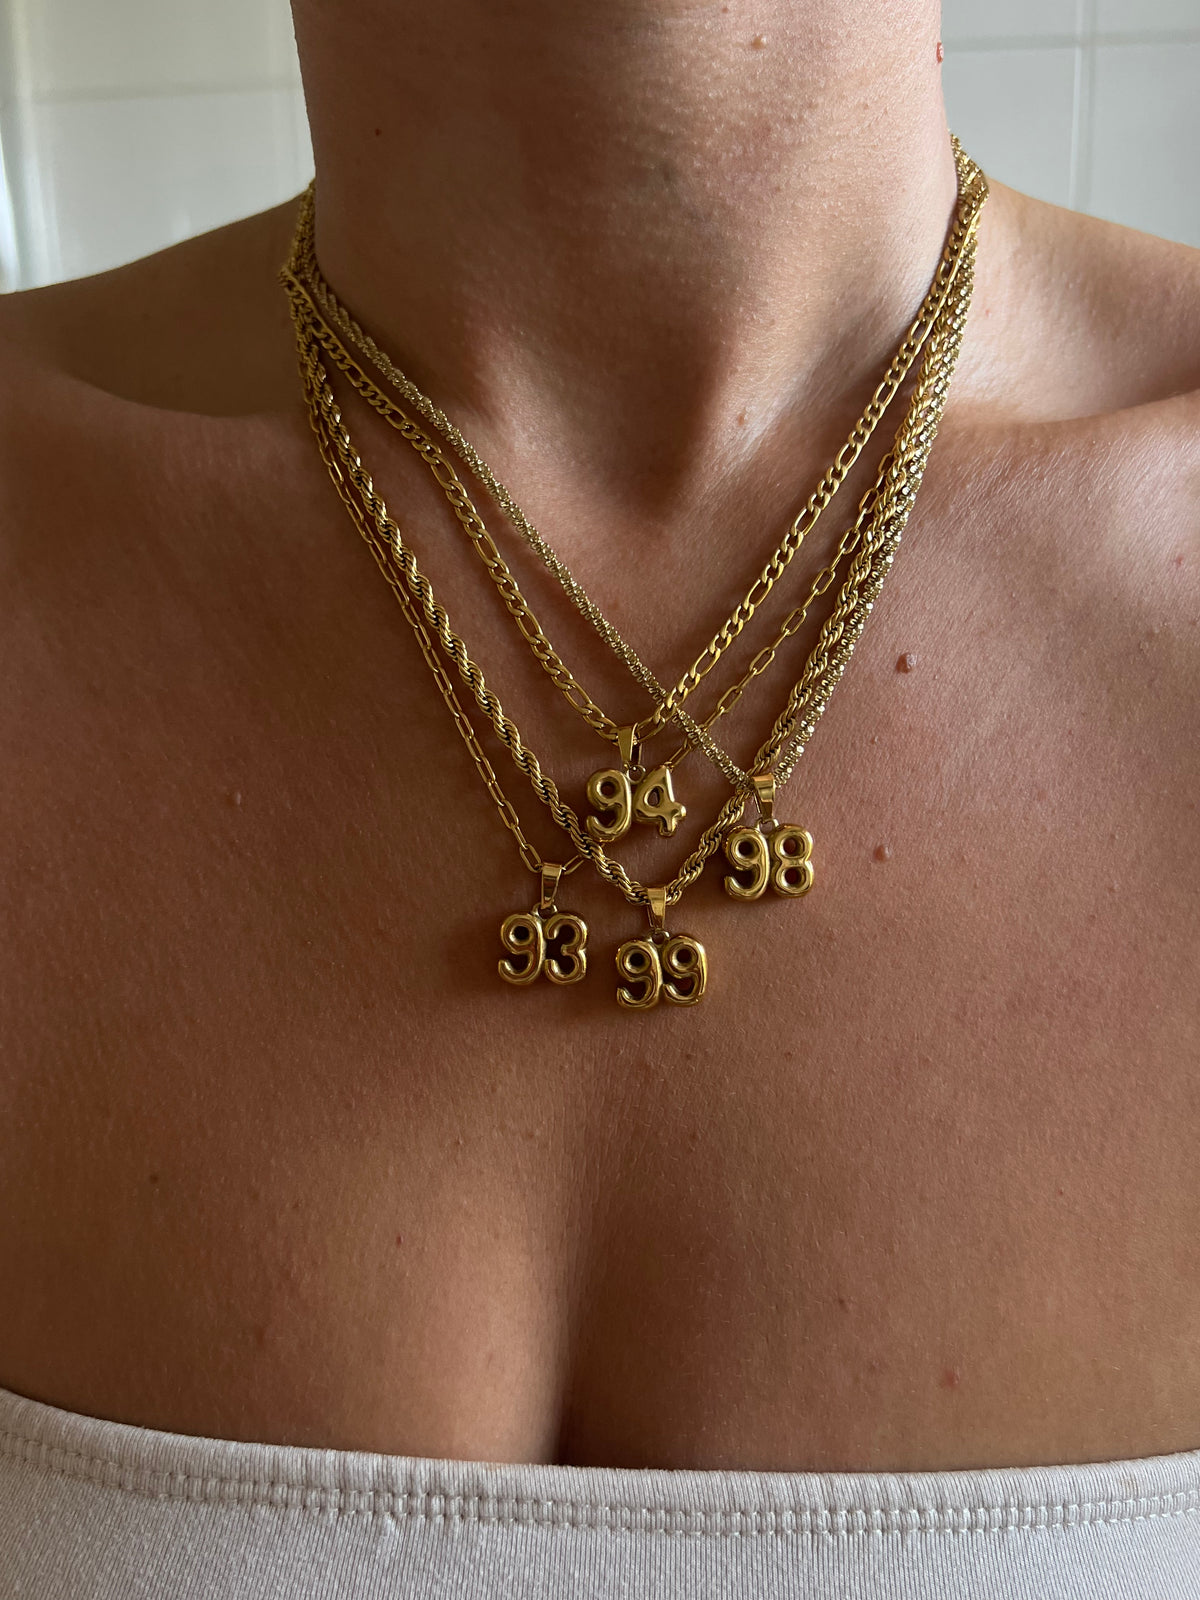 80s + 90s Bubble necklace